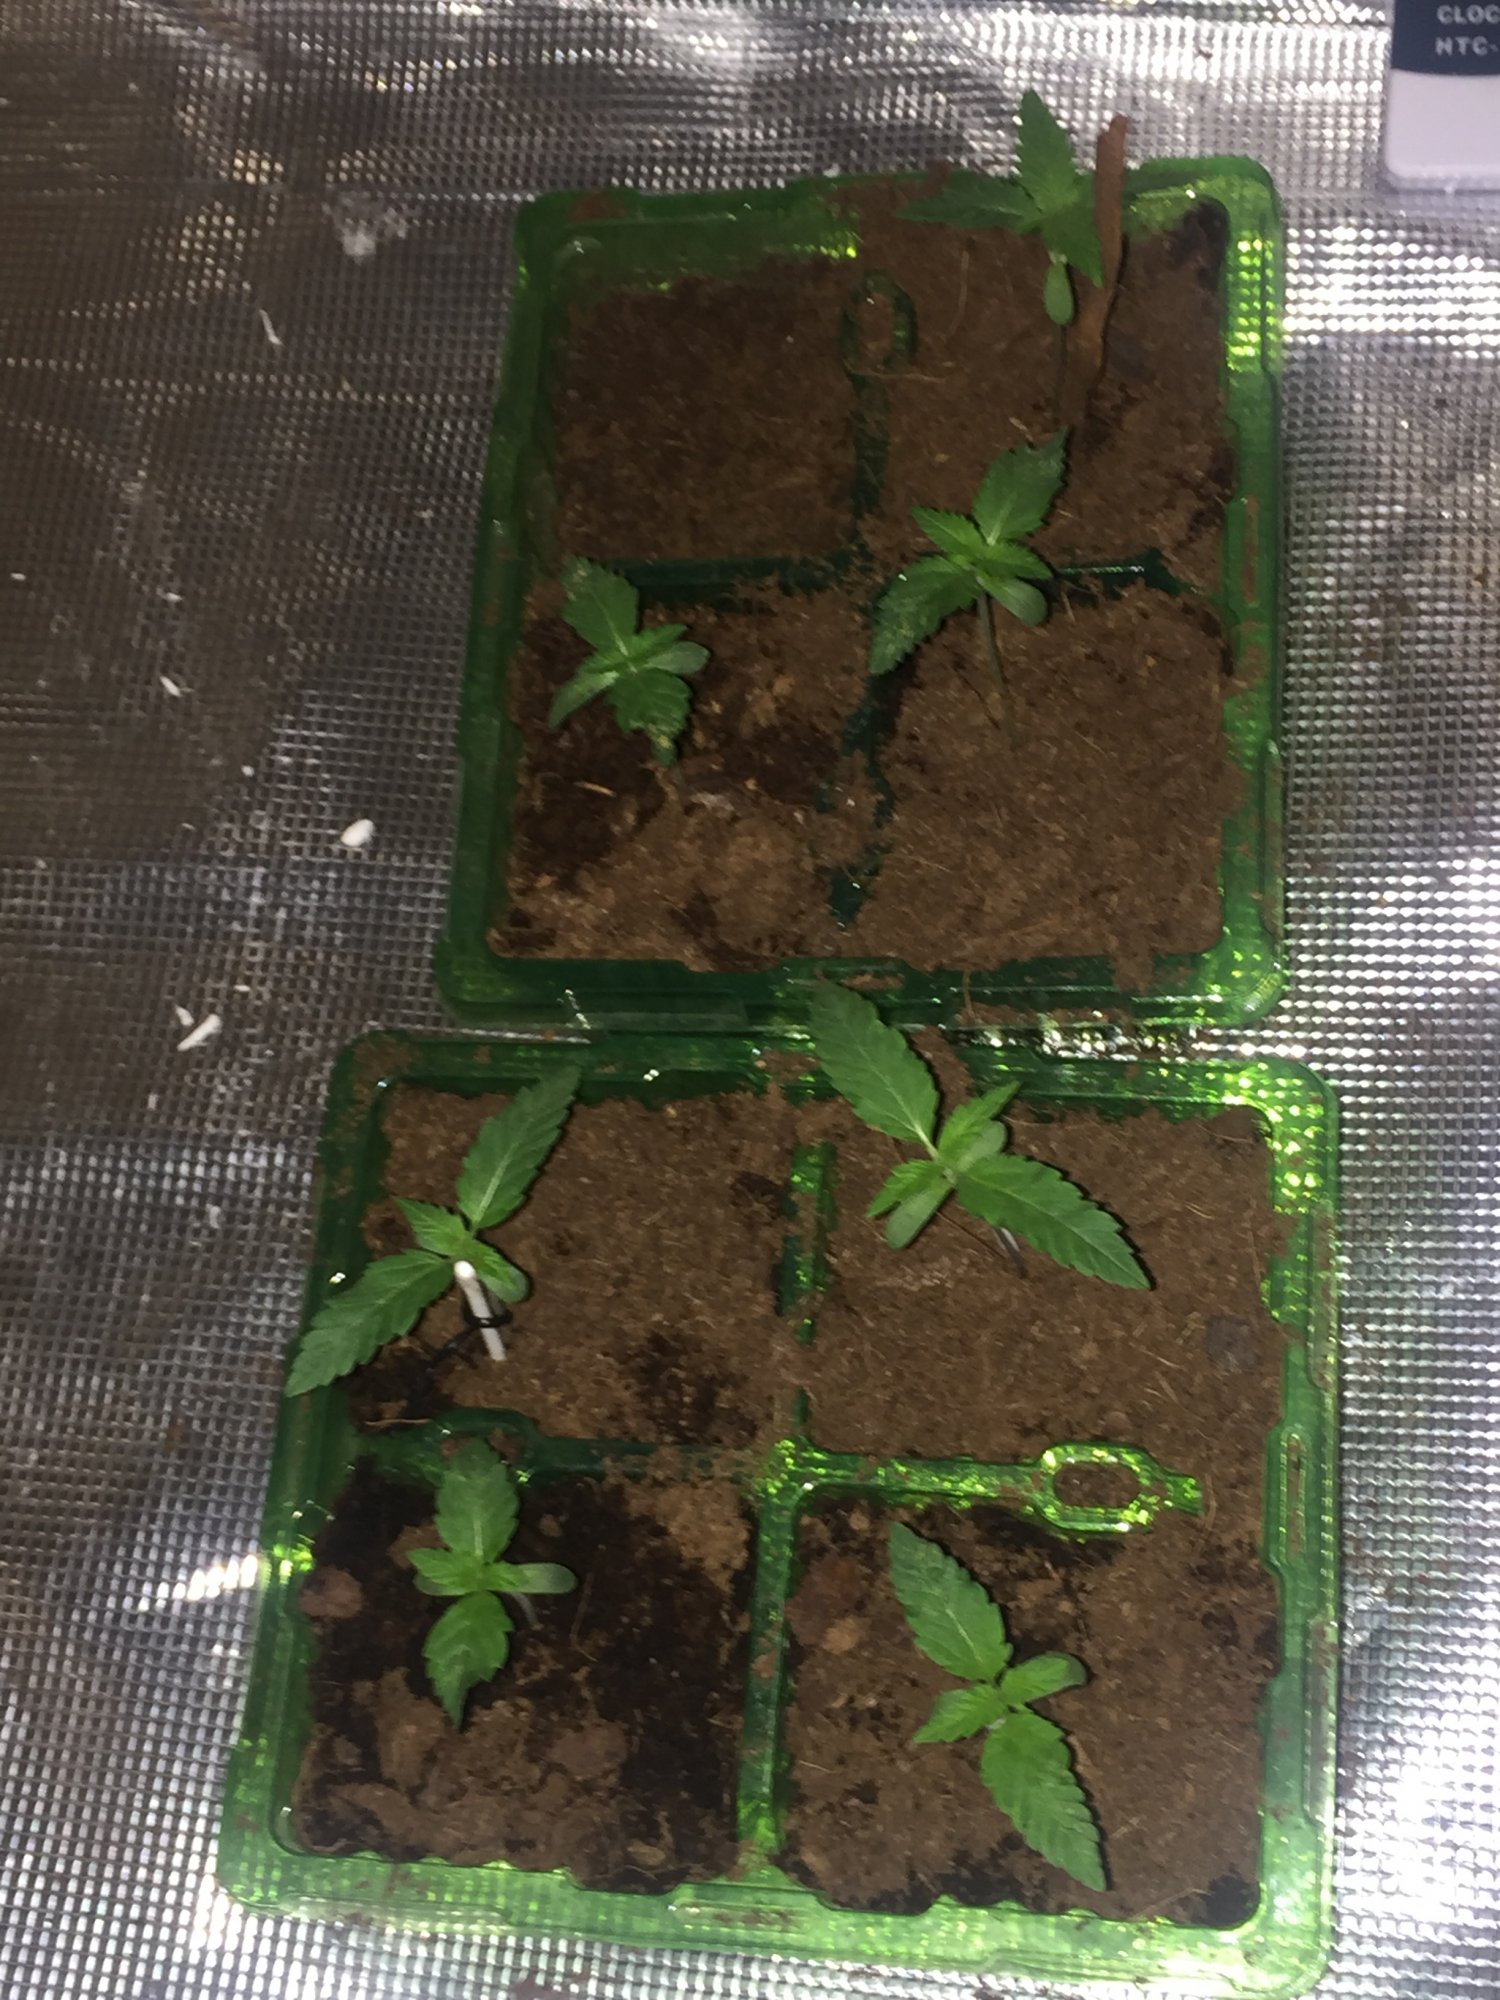 Seedlings look sick 3